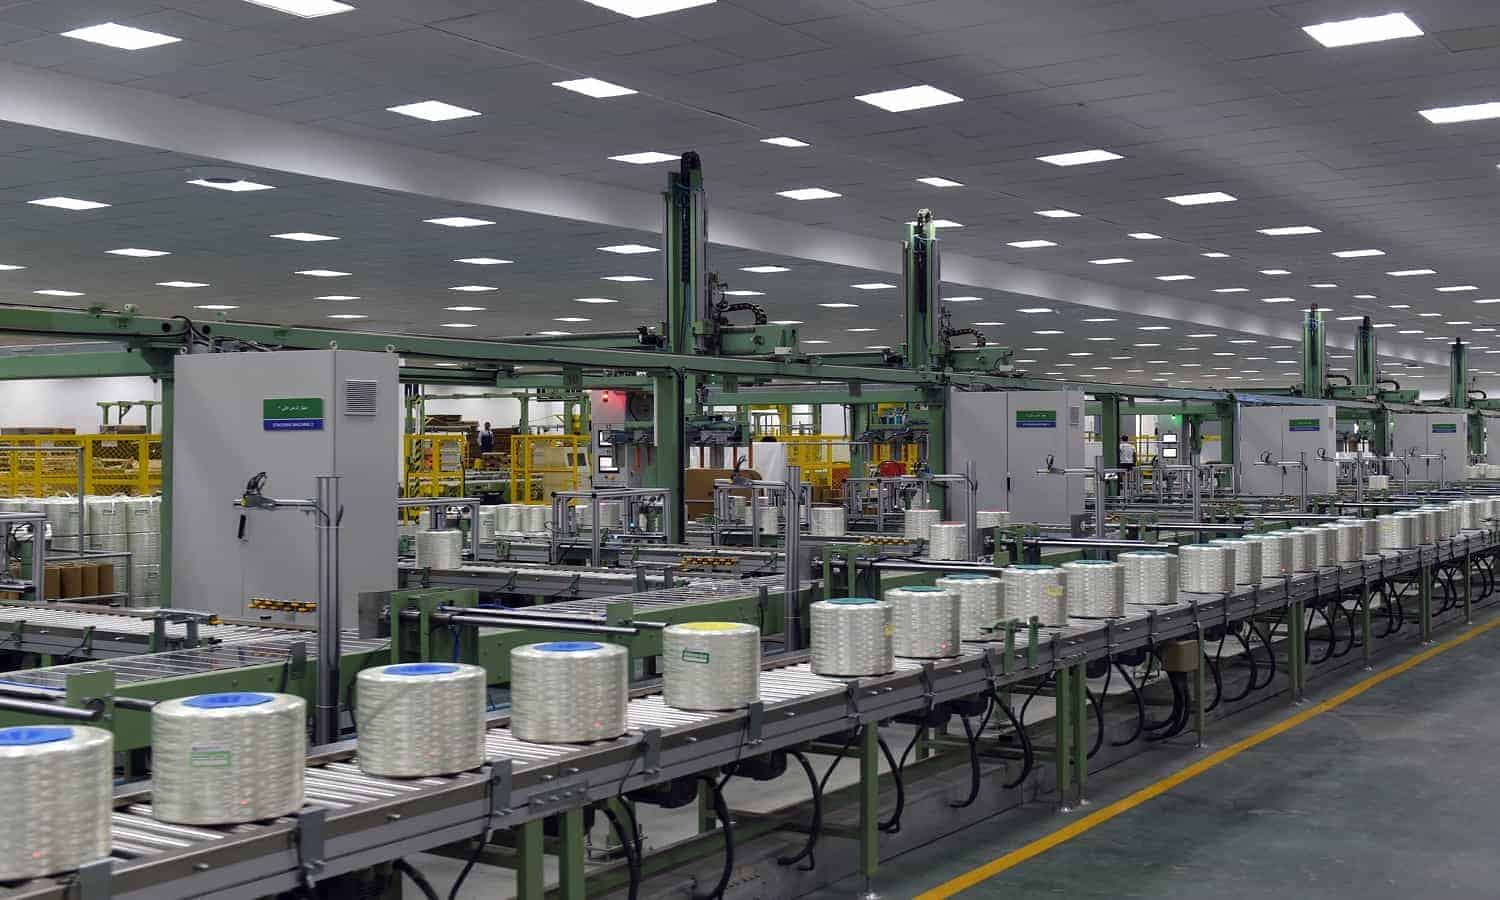 جوشي الصينية تفتتح خط انتاج جديد بقيمة 320 مليون دولار في مصنعها بالعين السخنة